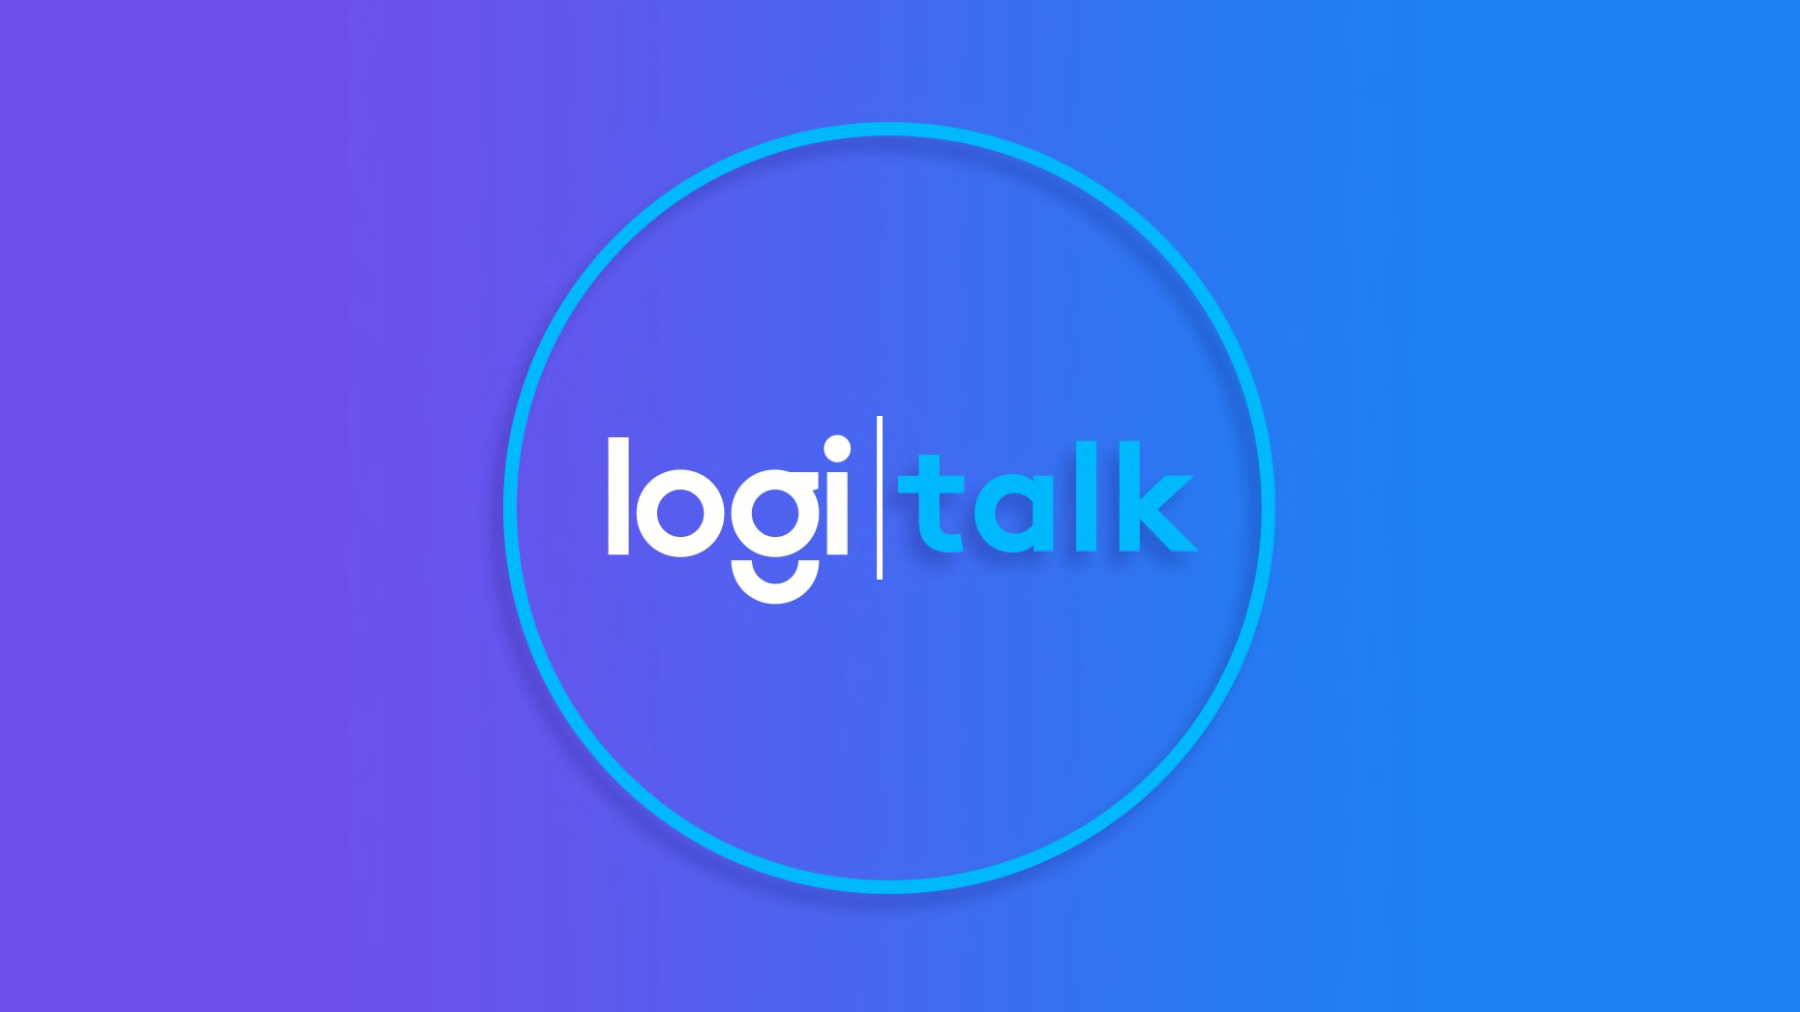 Logi talk-logoet